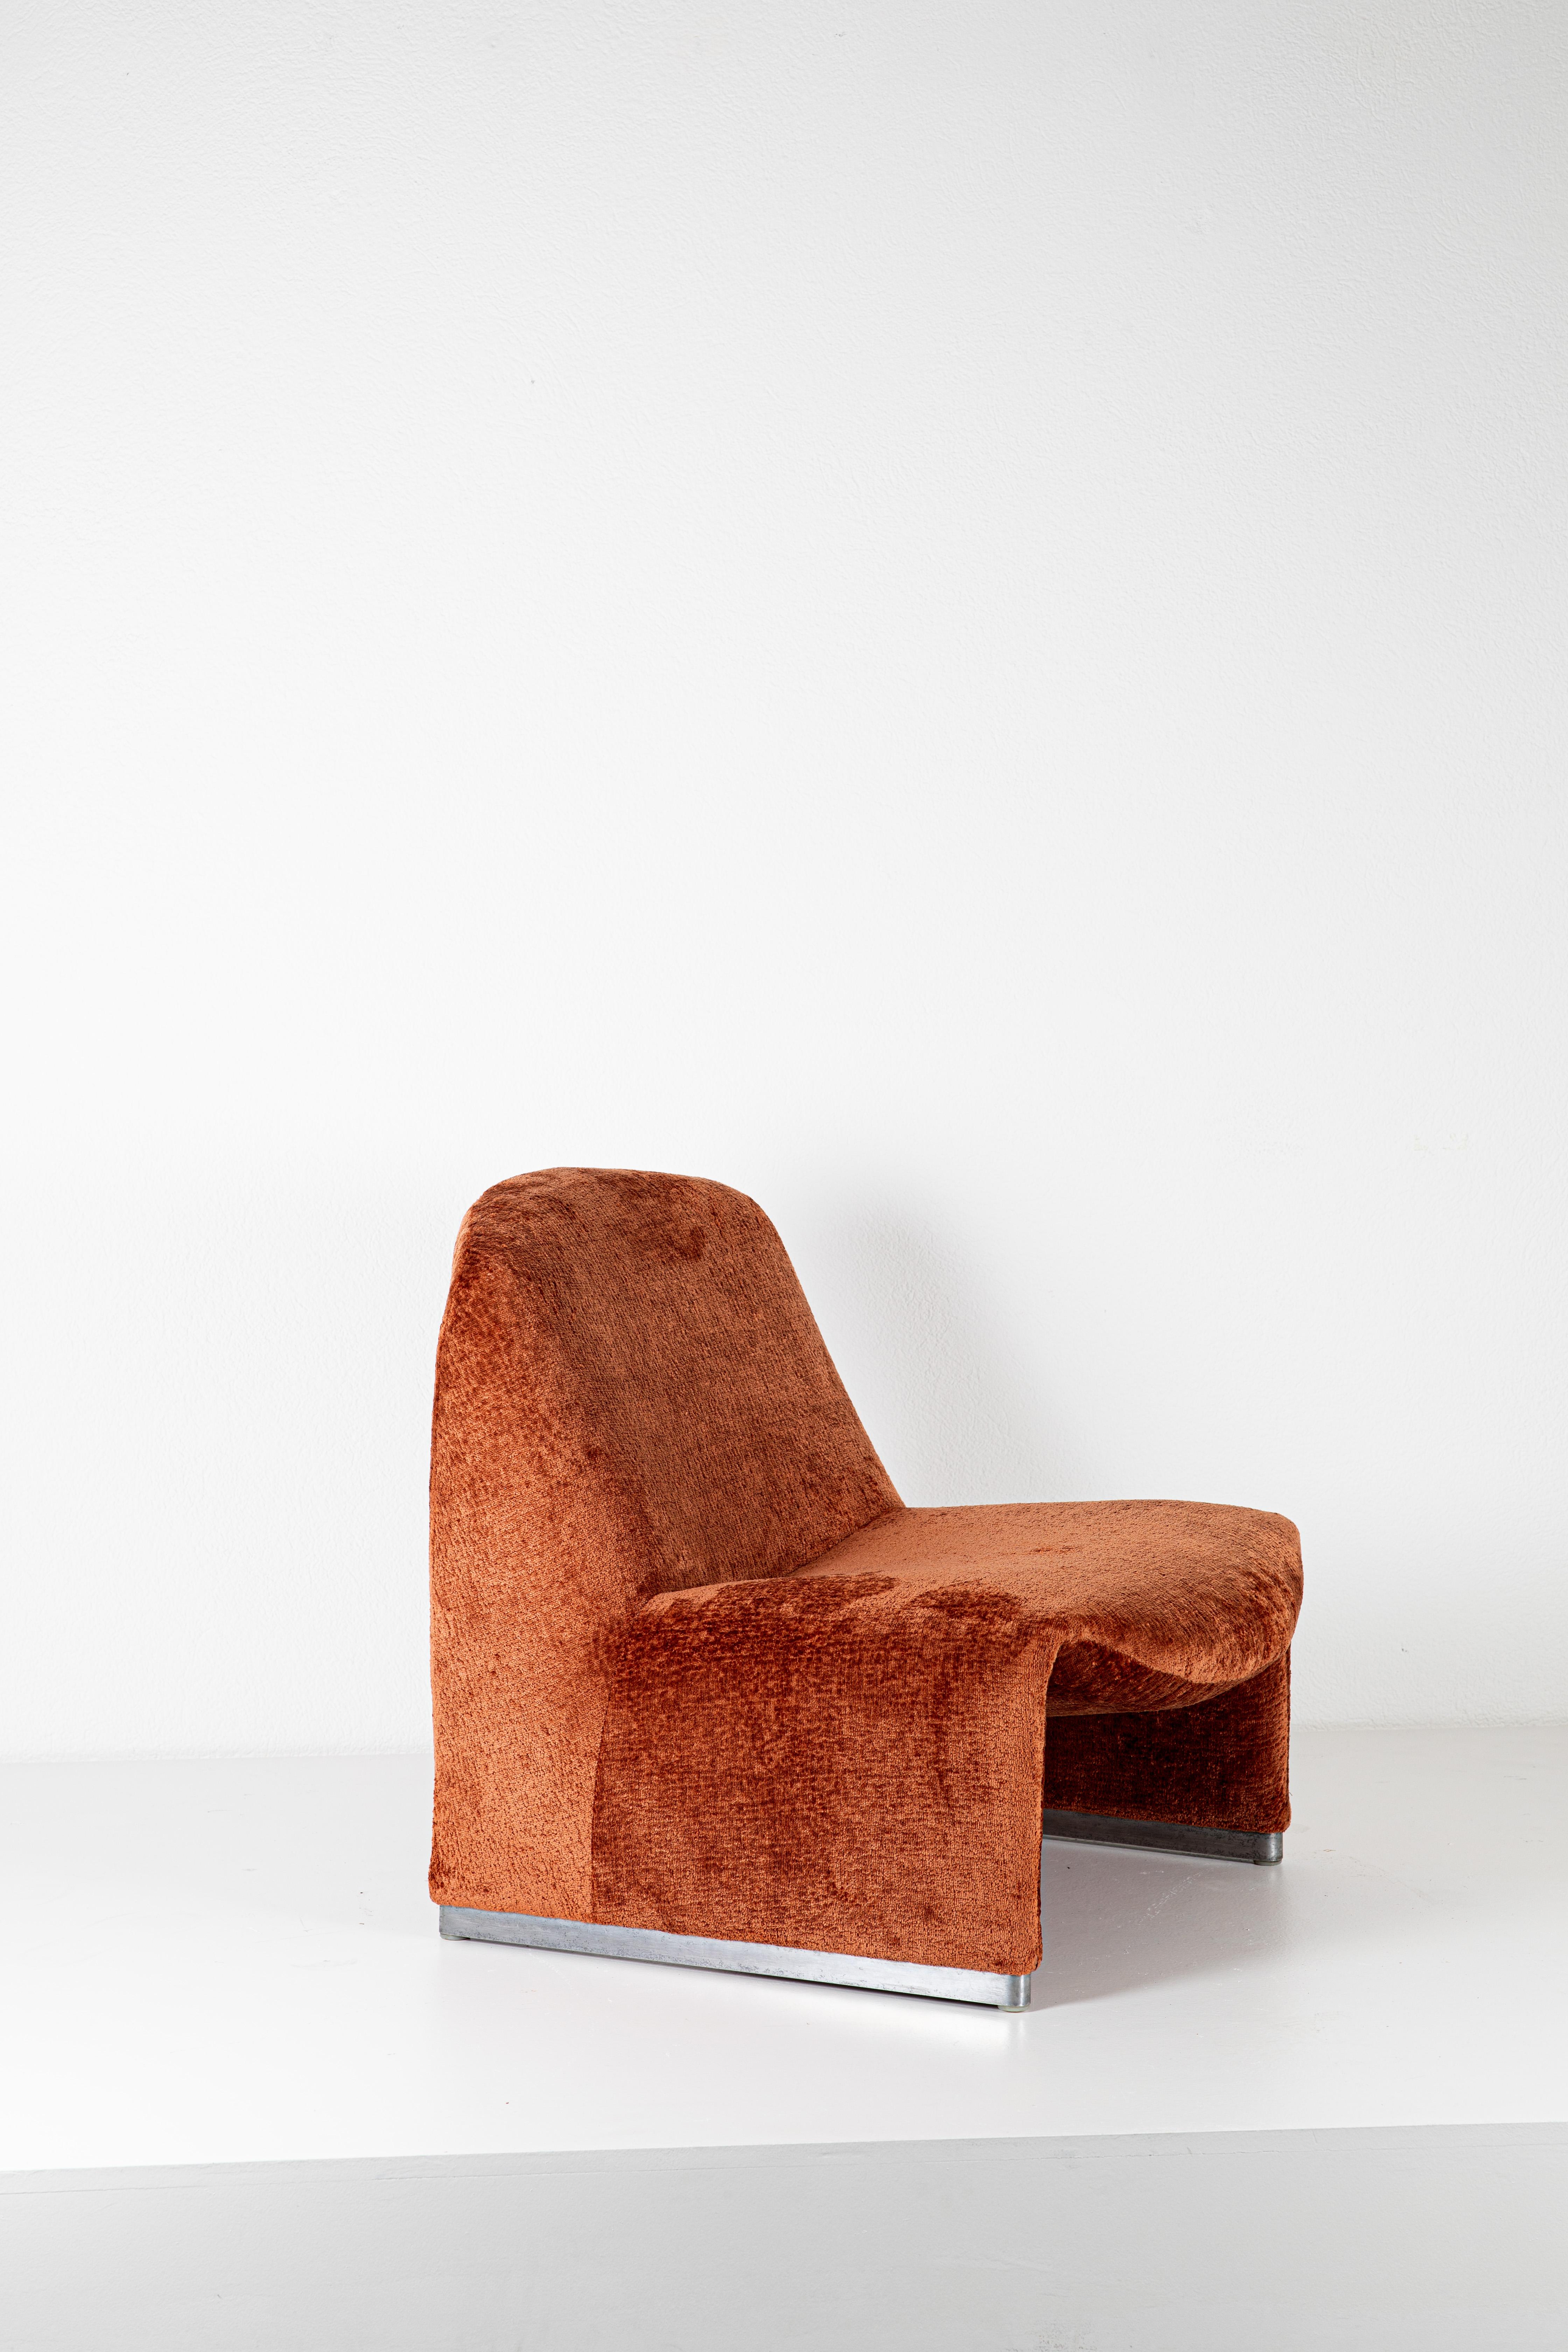 Le fauteuil Alky est une création de Giancarlo Piretti, un designer industriel italien connu pour ses conceptions de meubles innovants et fonctionnels. La chaise Aky est l'une de ses créations notables et est reconnue pour sa forme distinctive et